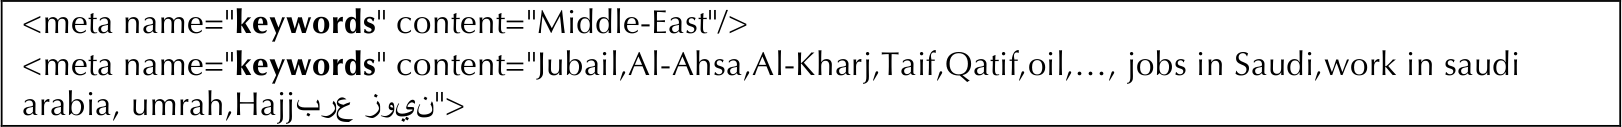  Figura 7. Etiquetas meta estándar (HTML) usadas por Arab News (7011) para sección y las palabras clave